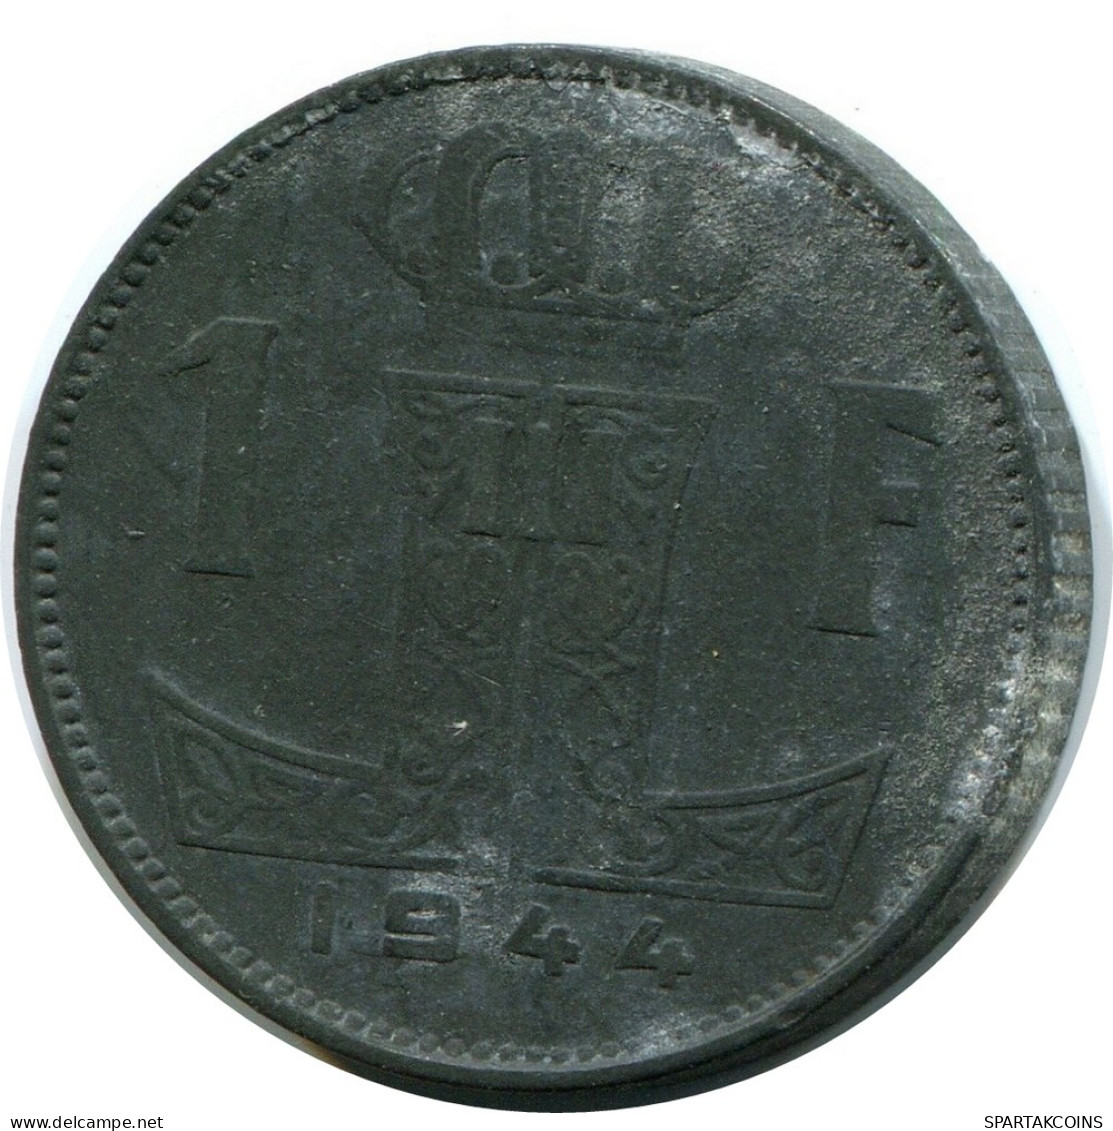 1 FRANC 1944 BELGIEN BELGIUM Münze #AW914.D - 1 Franc